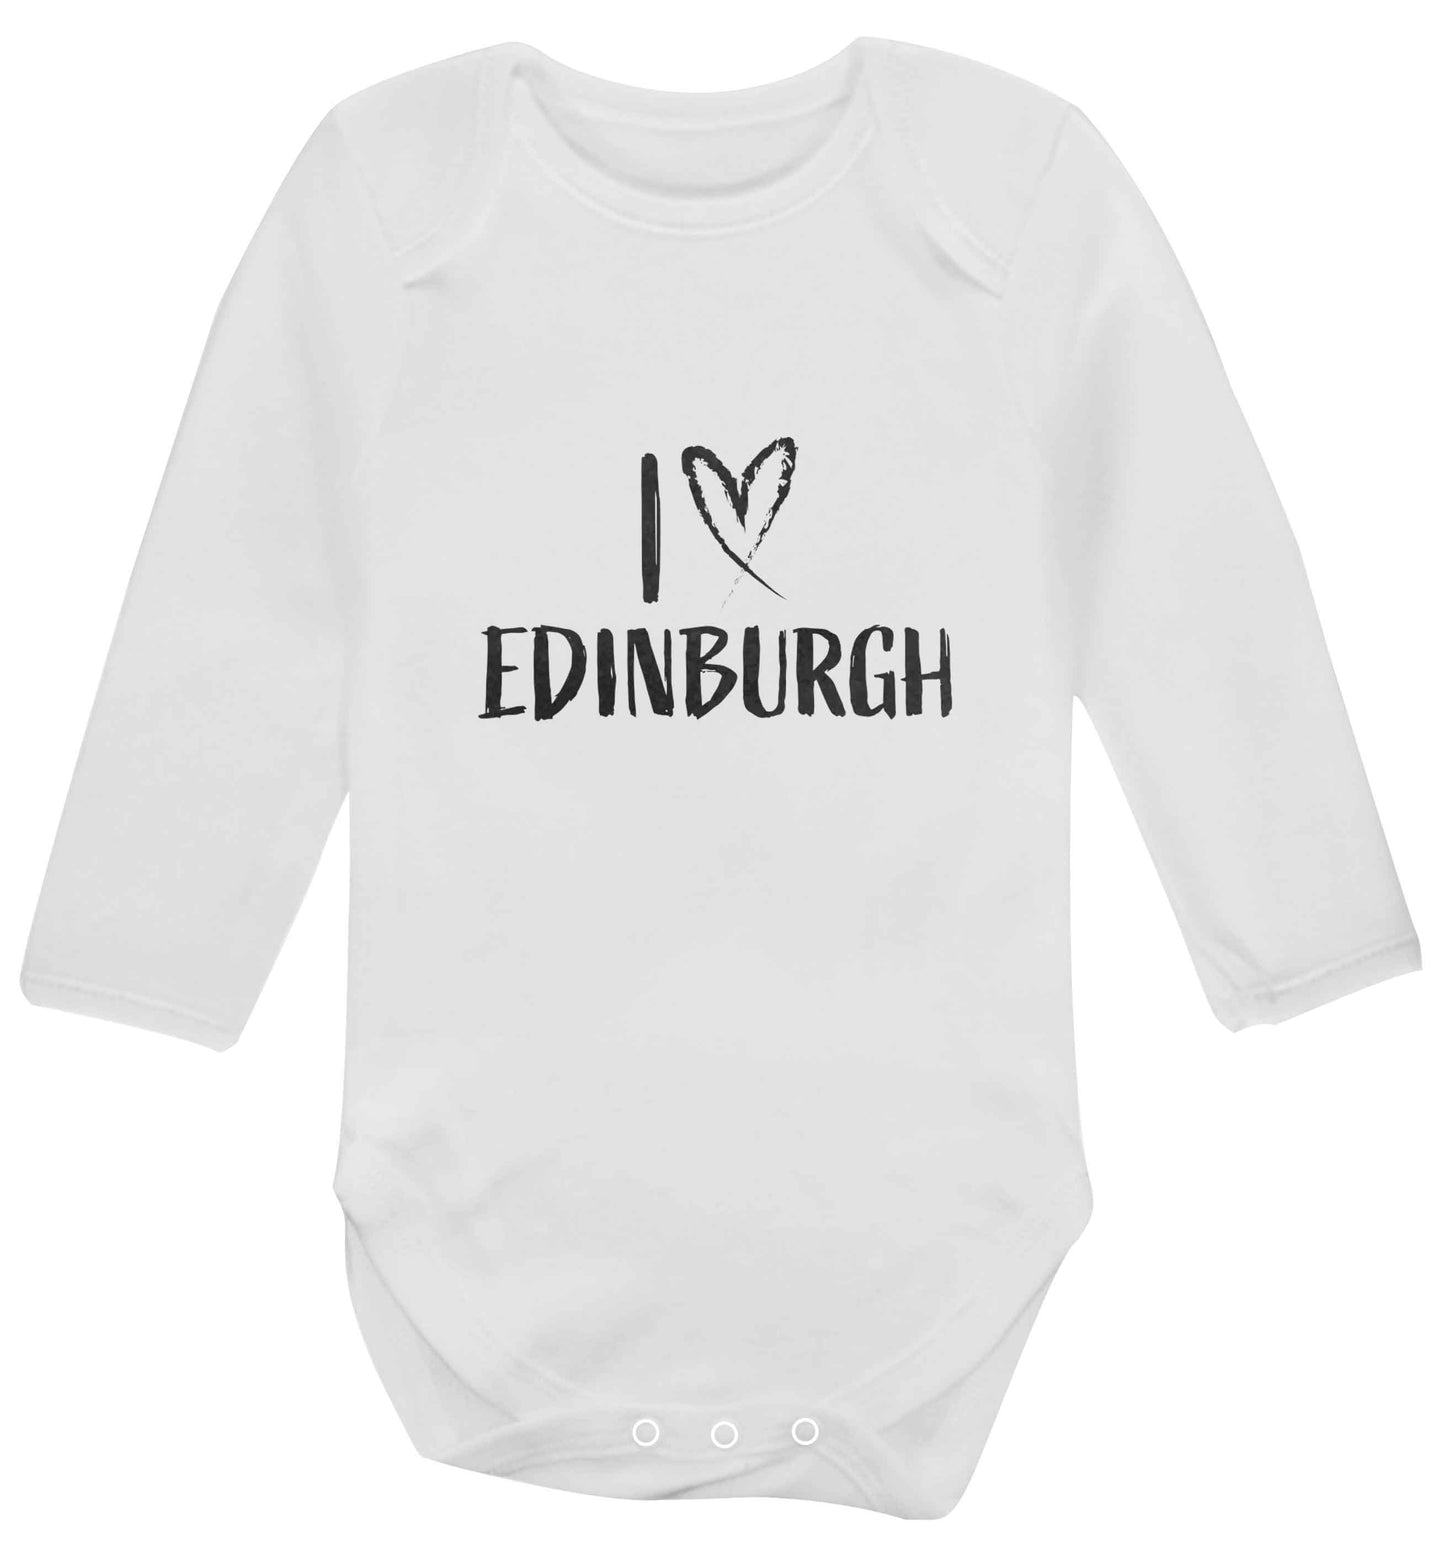 I love Edinburgh baby vest long sleeved white 6-12 months